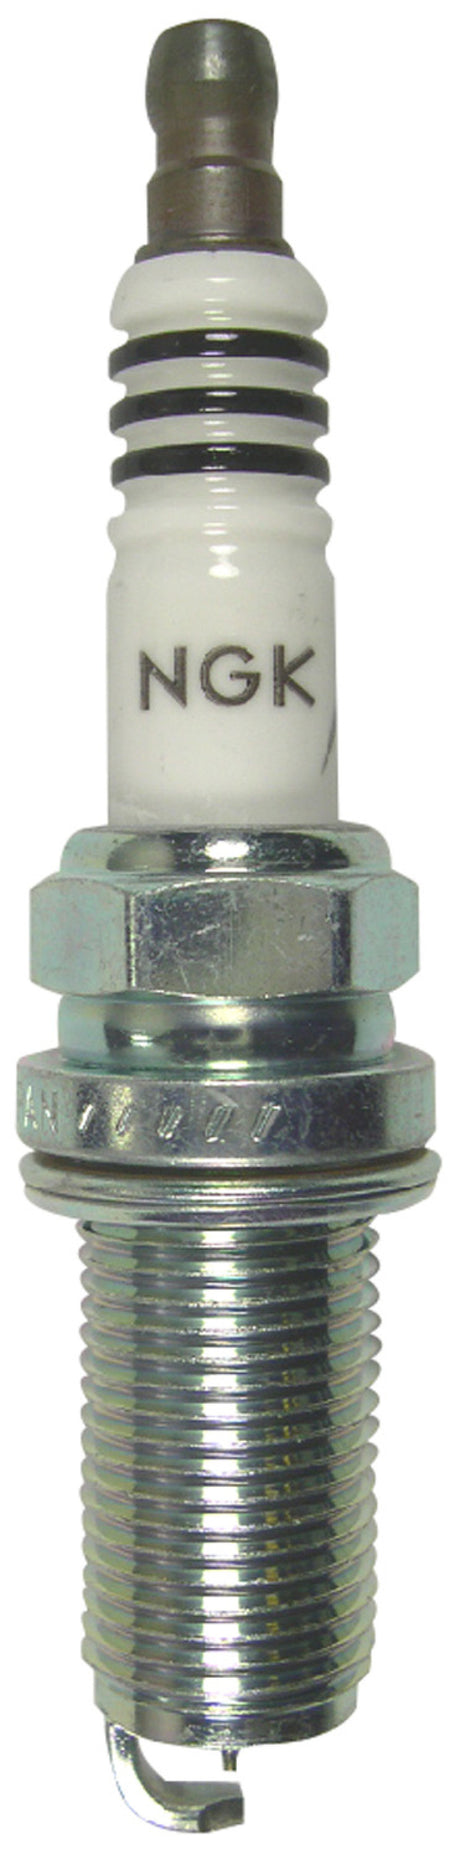 NGK Iridium Spark Plug Box of 4 (LFR5AIX-11)